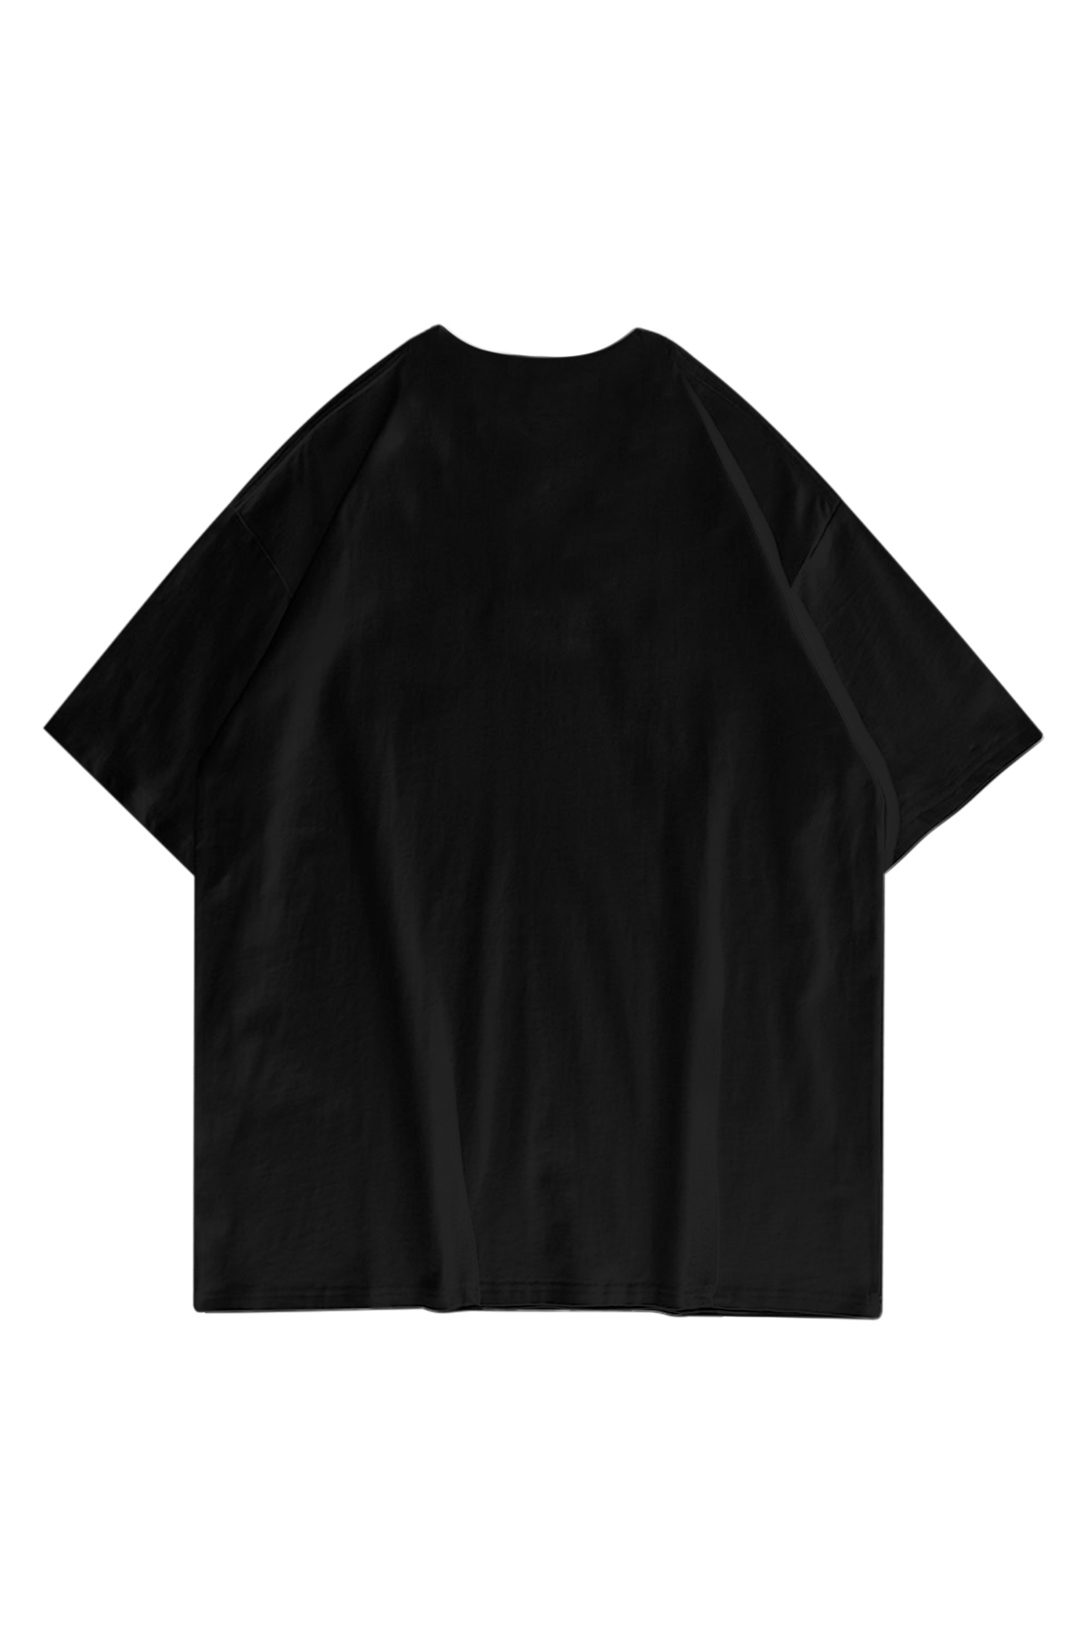 Trendiz Unisex Bitcoin Siyah Tshirt